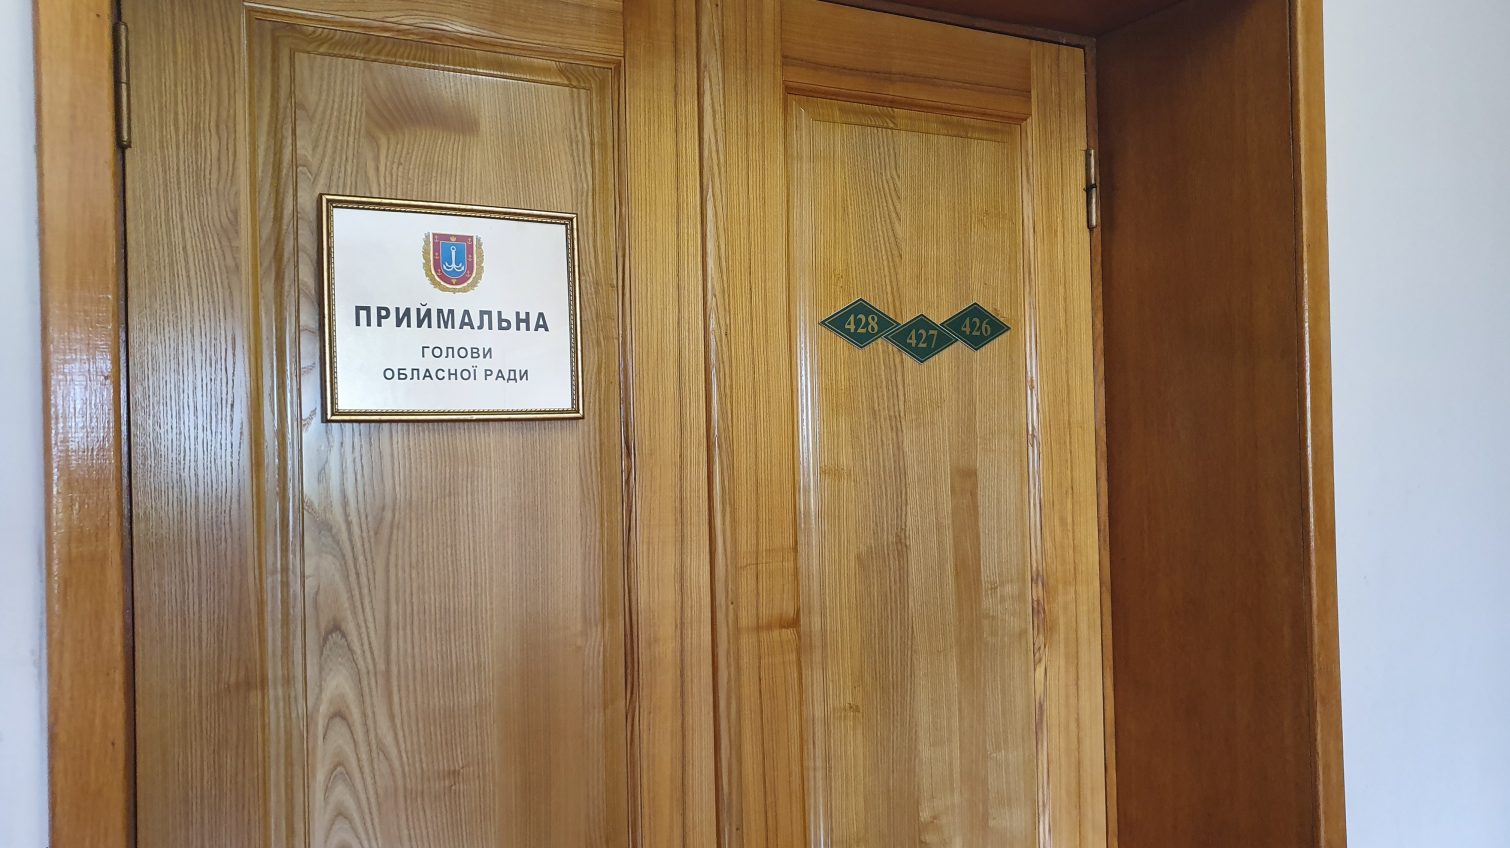 “Не обыски, а изъятие нужных для дела материалов”, – глава Одесского облсовета о приходе ГБР к нему в кабинет «фото»